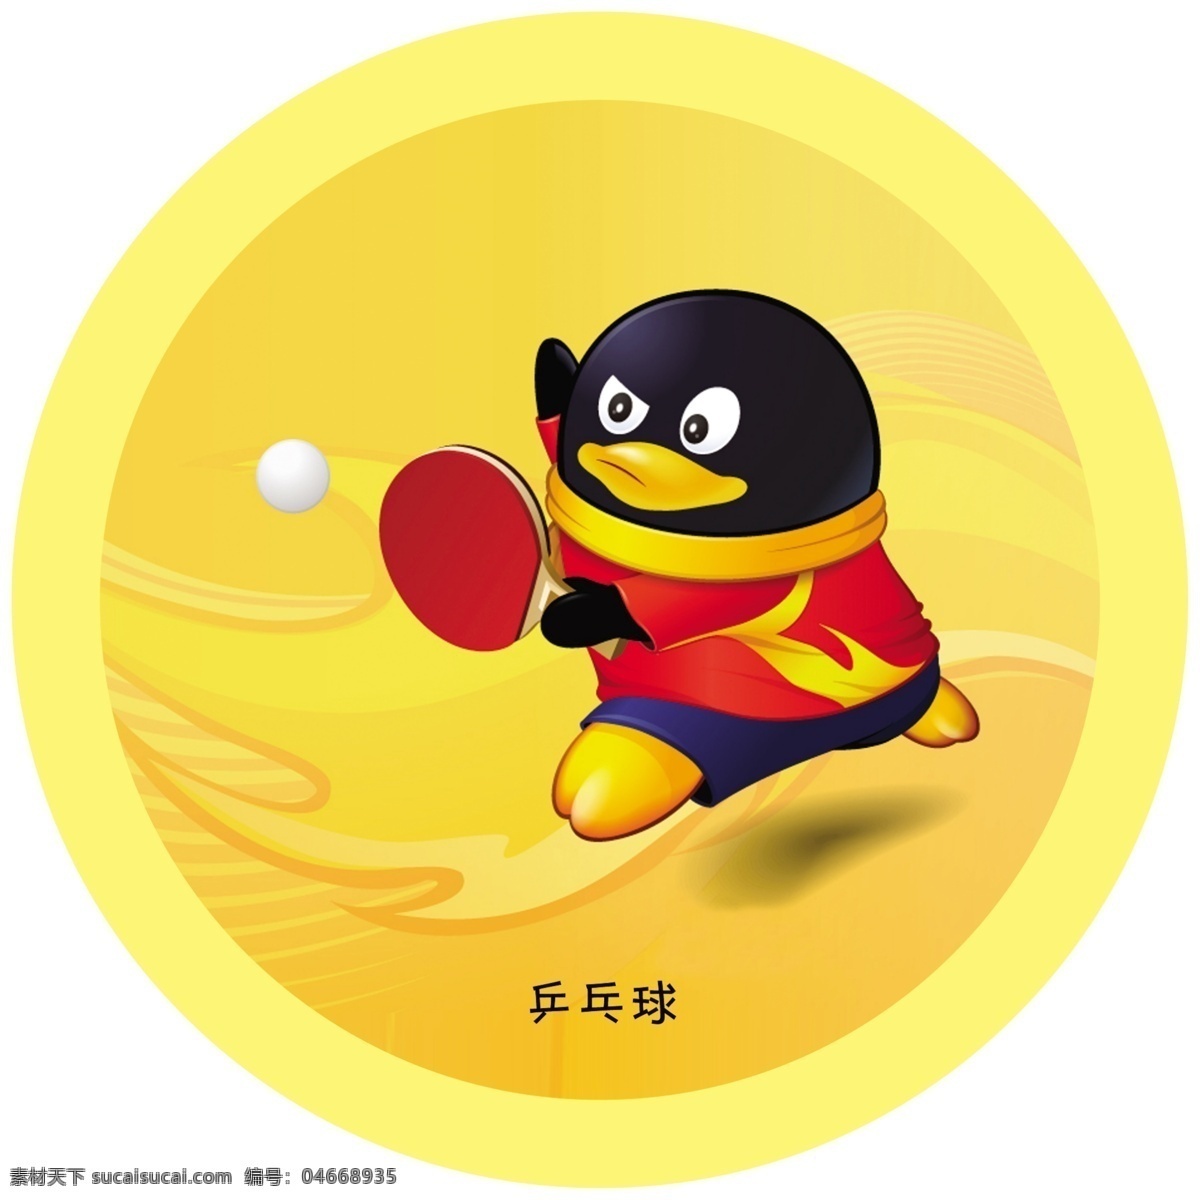 乒乓球标牌 奥运项目 运动项目 乒乓 乒乓球 球 qq 企鹅 黄色 圆形 展板模板 广告设计模板 源文件